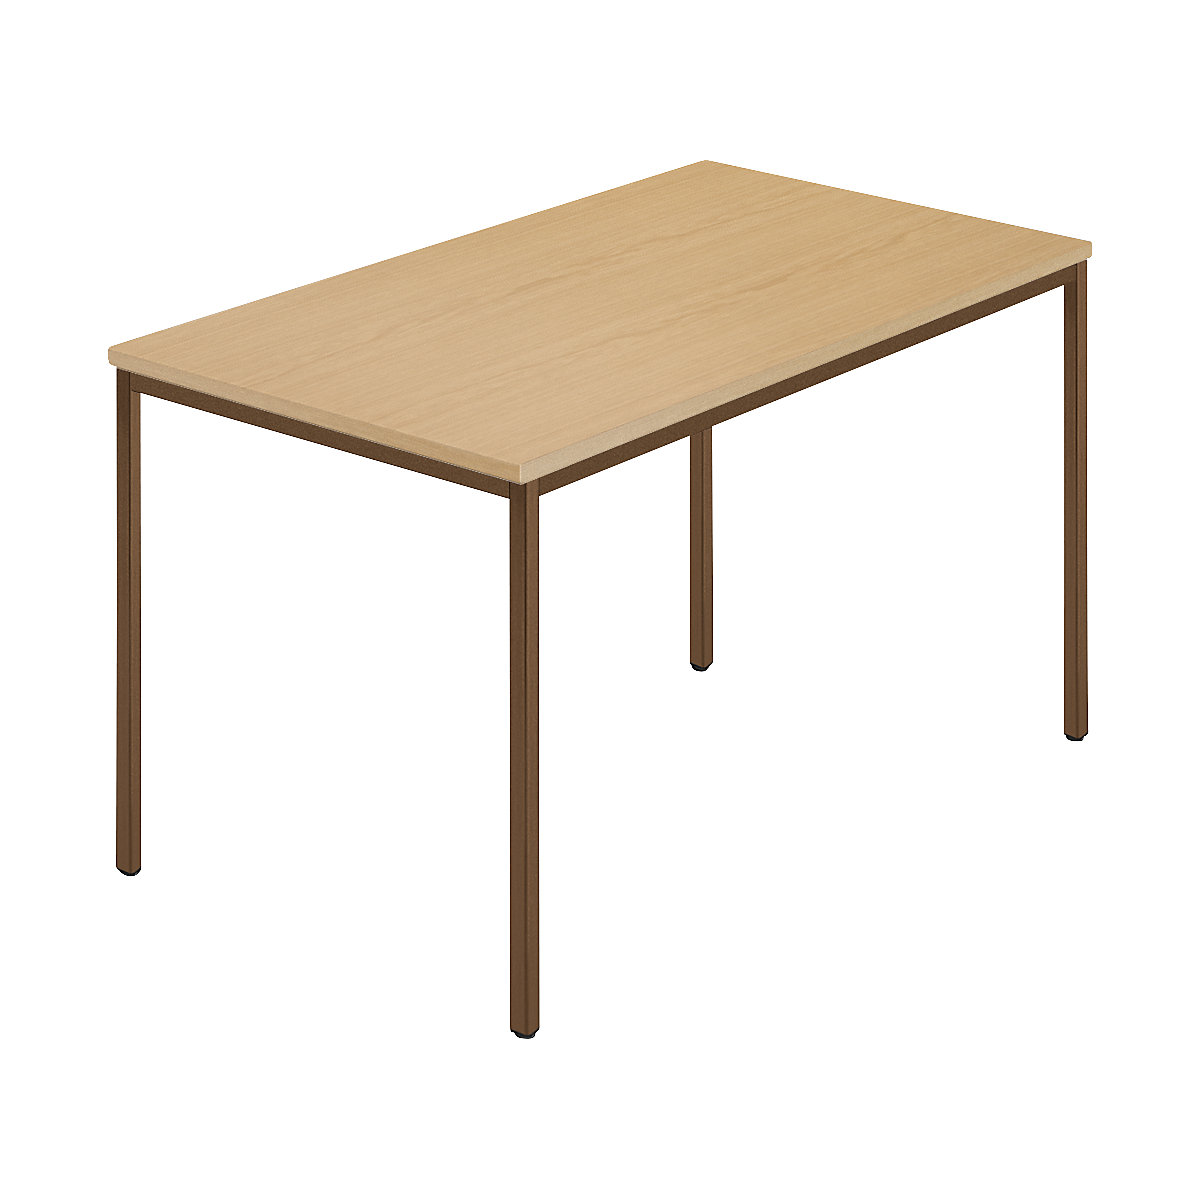 Table rectangulaire, tube carré plastifié, l x p 1200 x 800 mm, hêtre naturel / brun-7